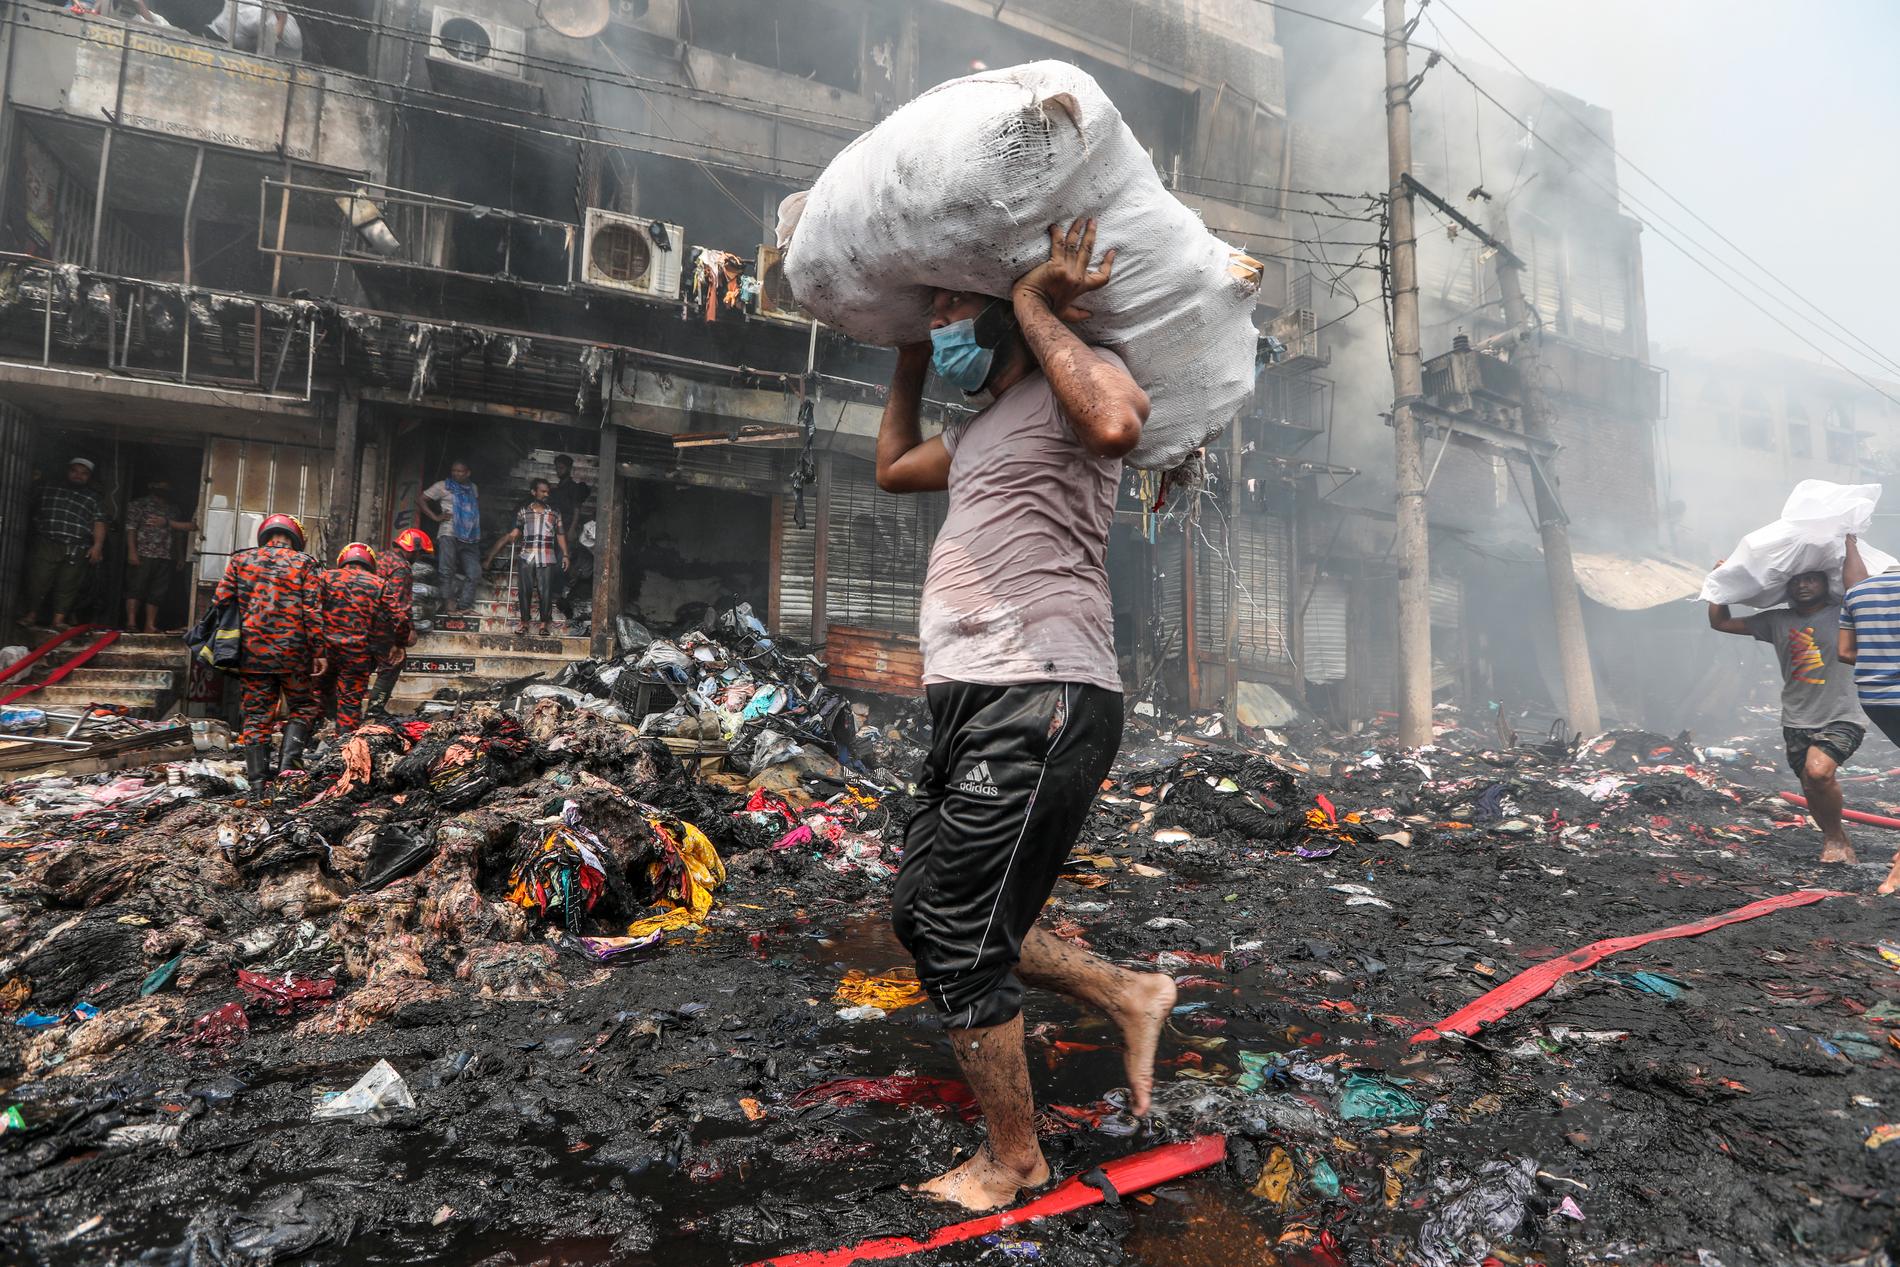 Branden har utraderat en populär klädmarknad i Dhaka, Bangladesh.